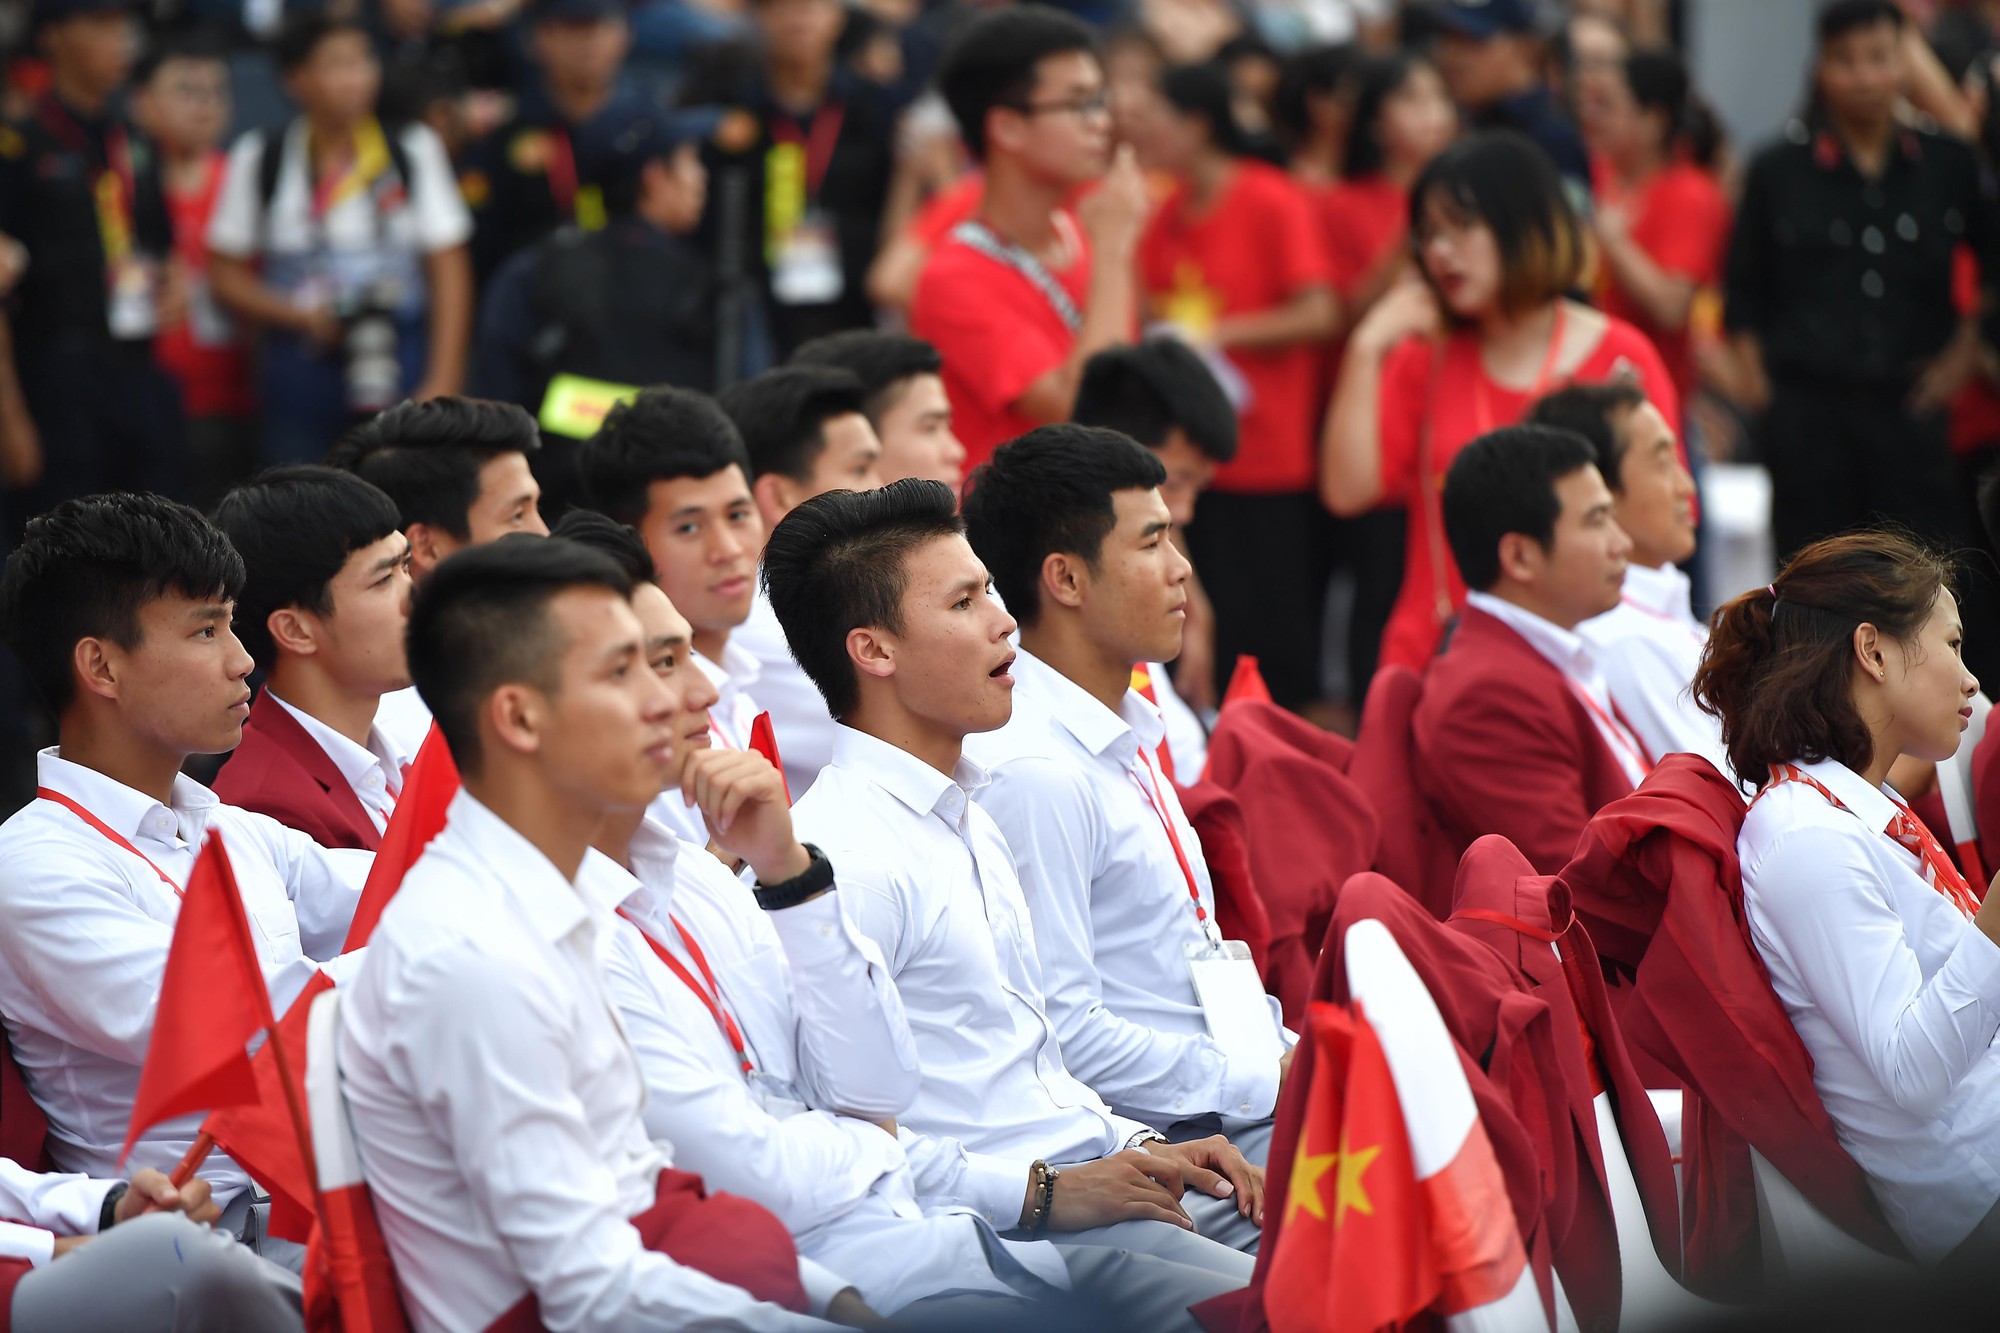 Ảnh: Các cầu thủ Olympic Việt Nam xuống sân Mỹ Đình tham dự lễ vinh danh trong sự reo hò của hàng ngàn người hâm mộ - Ảnh 11.